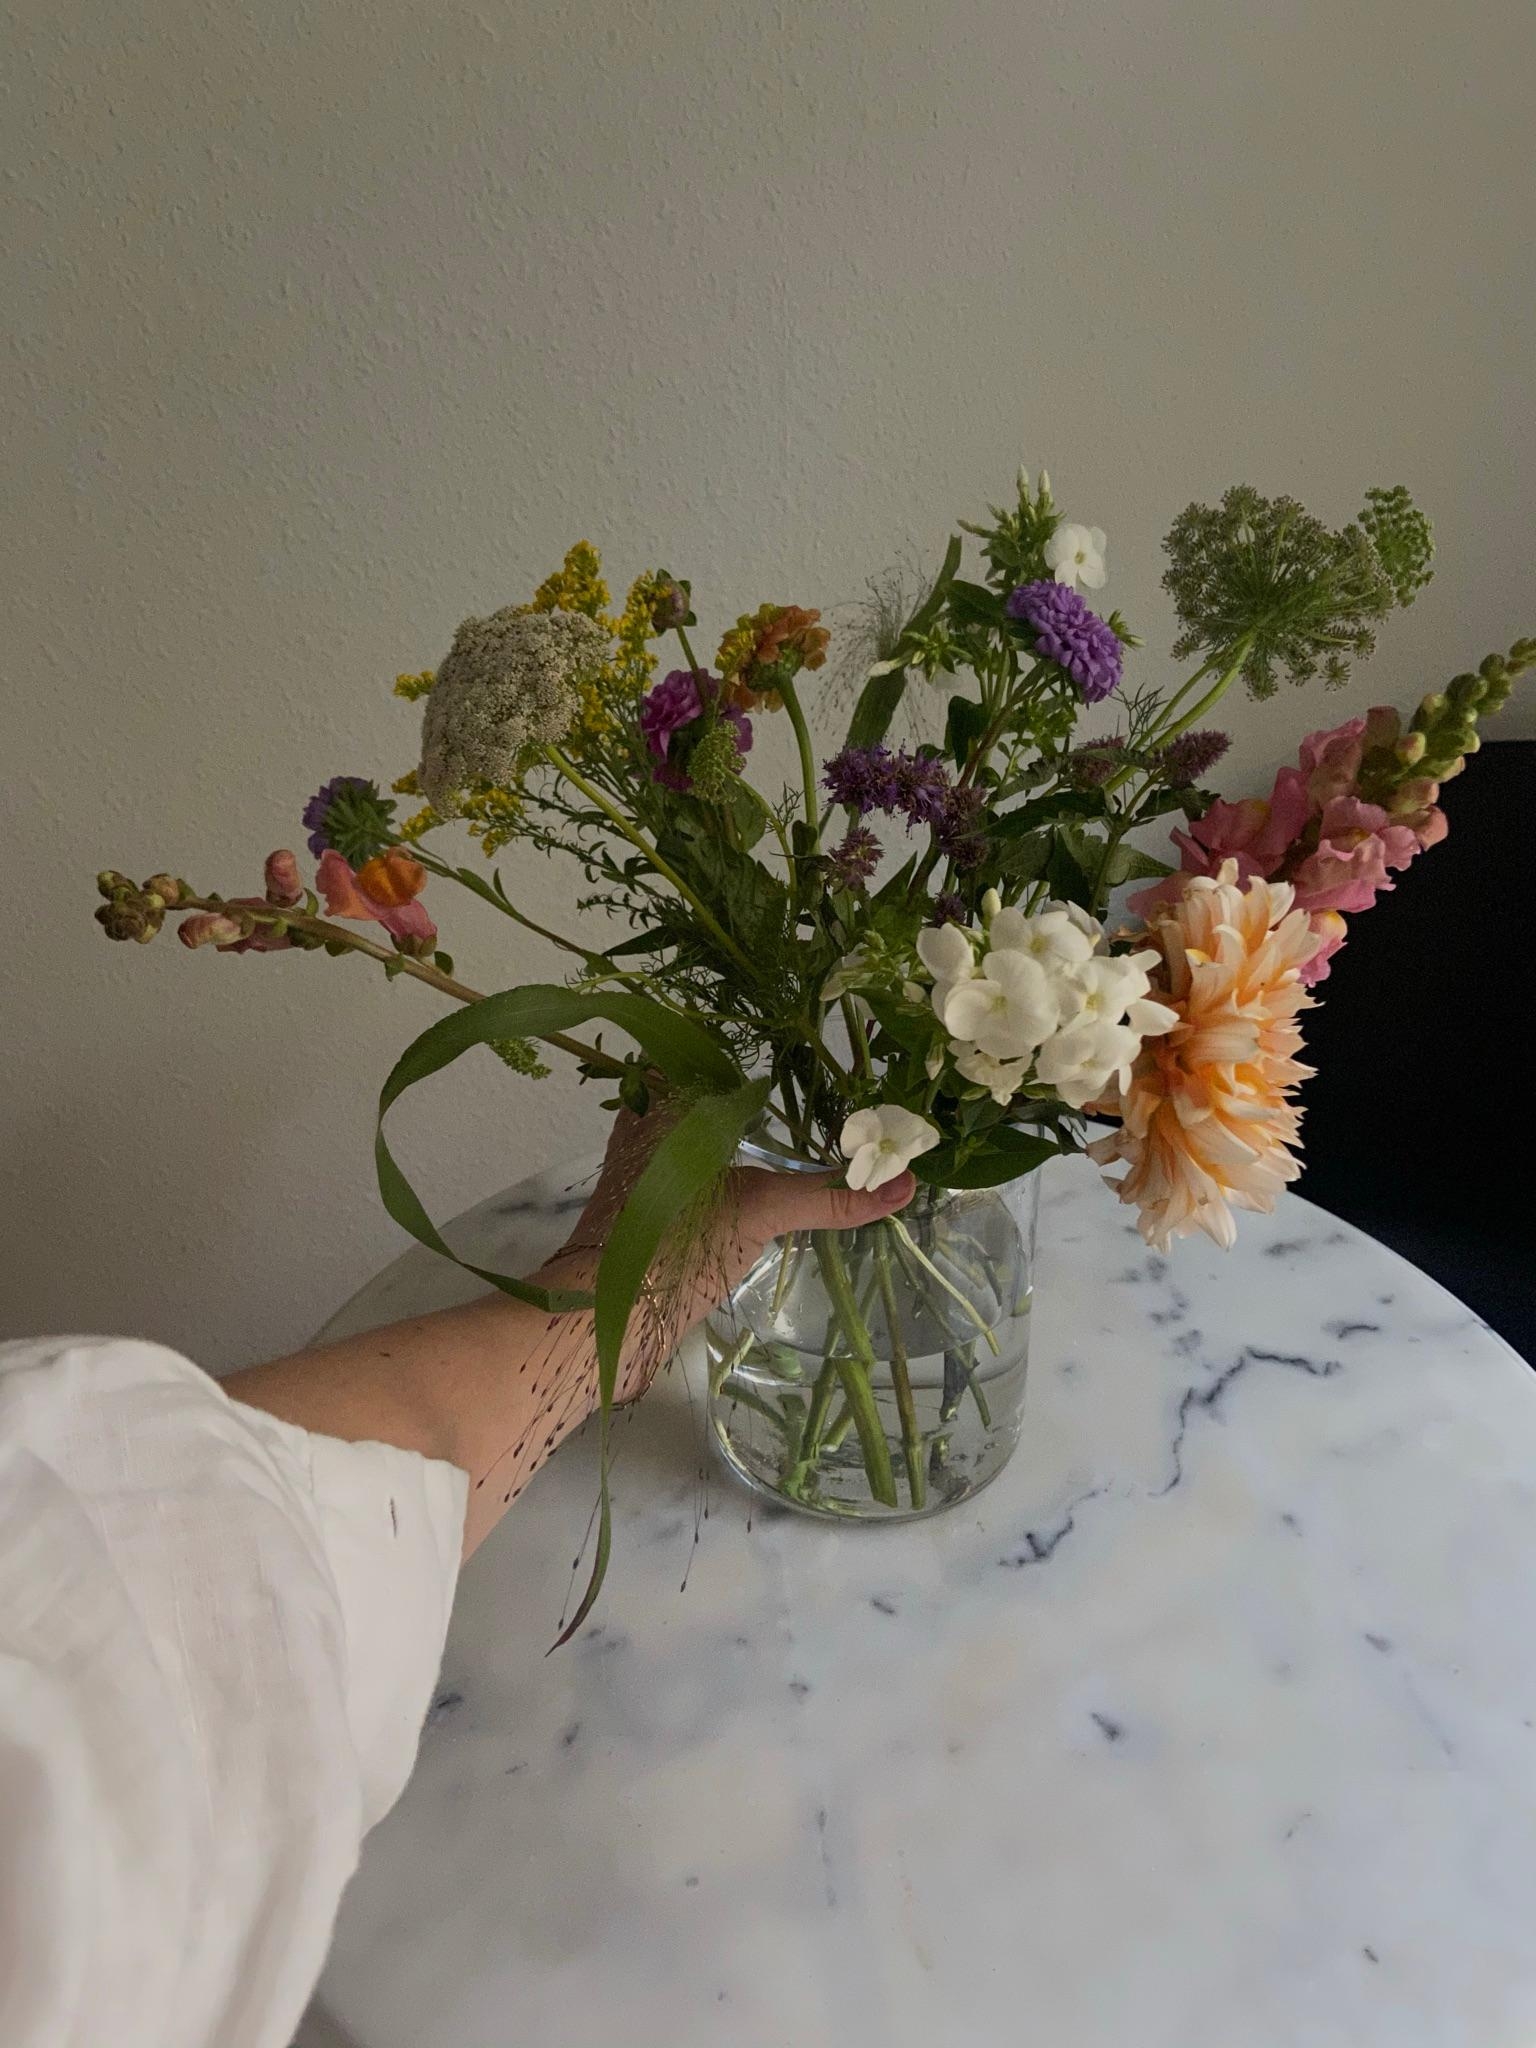 tag 3 - #greenliving mit geretteten Blumen und second hand Marmortisch 🤍 
#livingchallenge